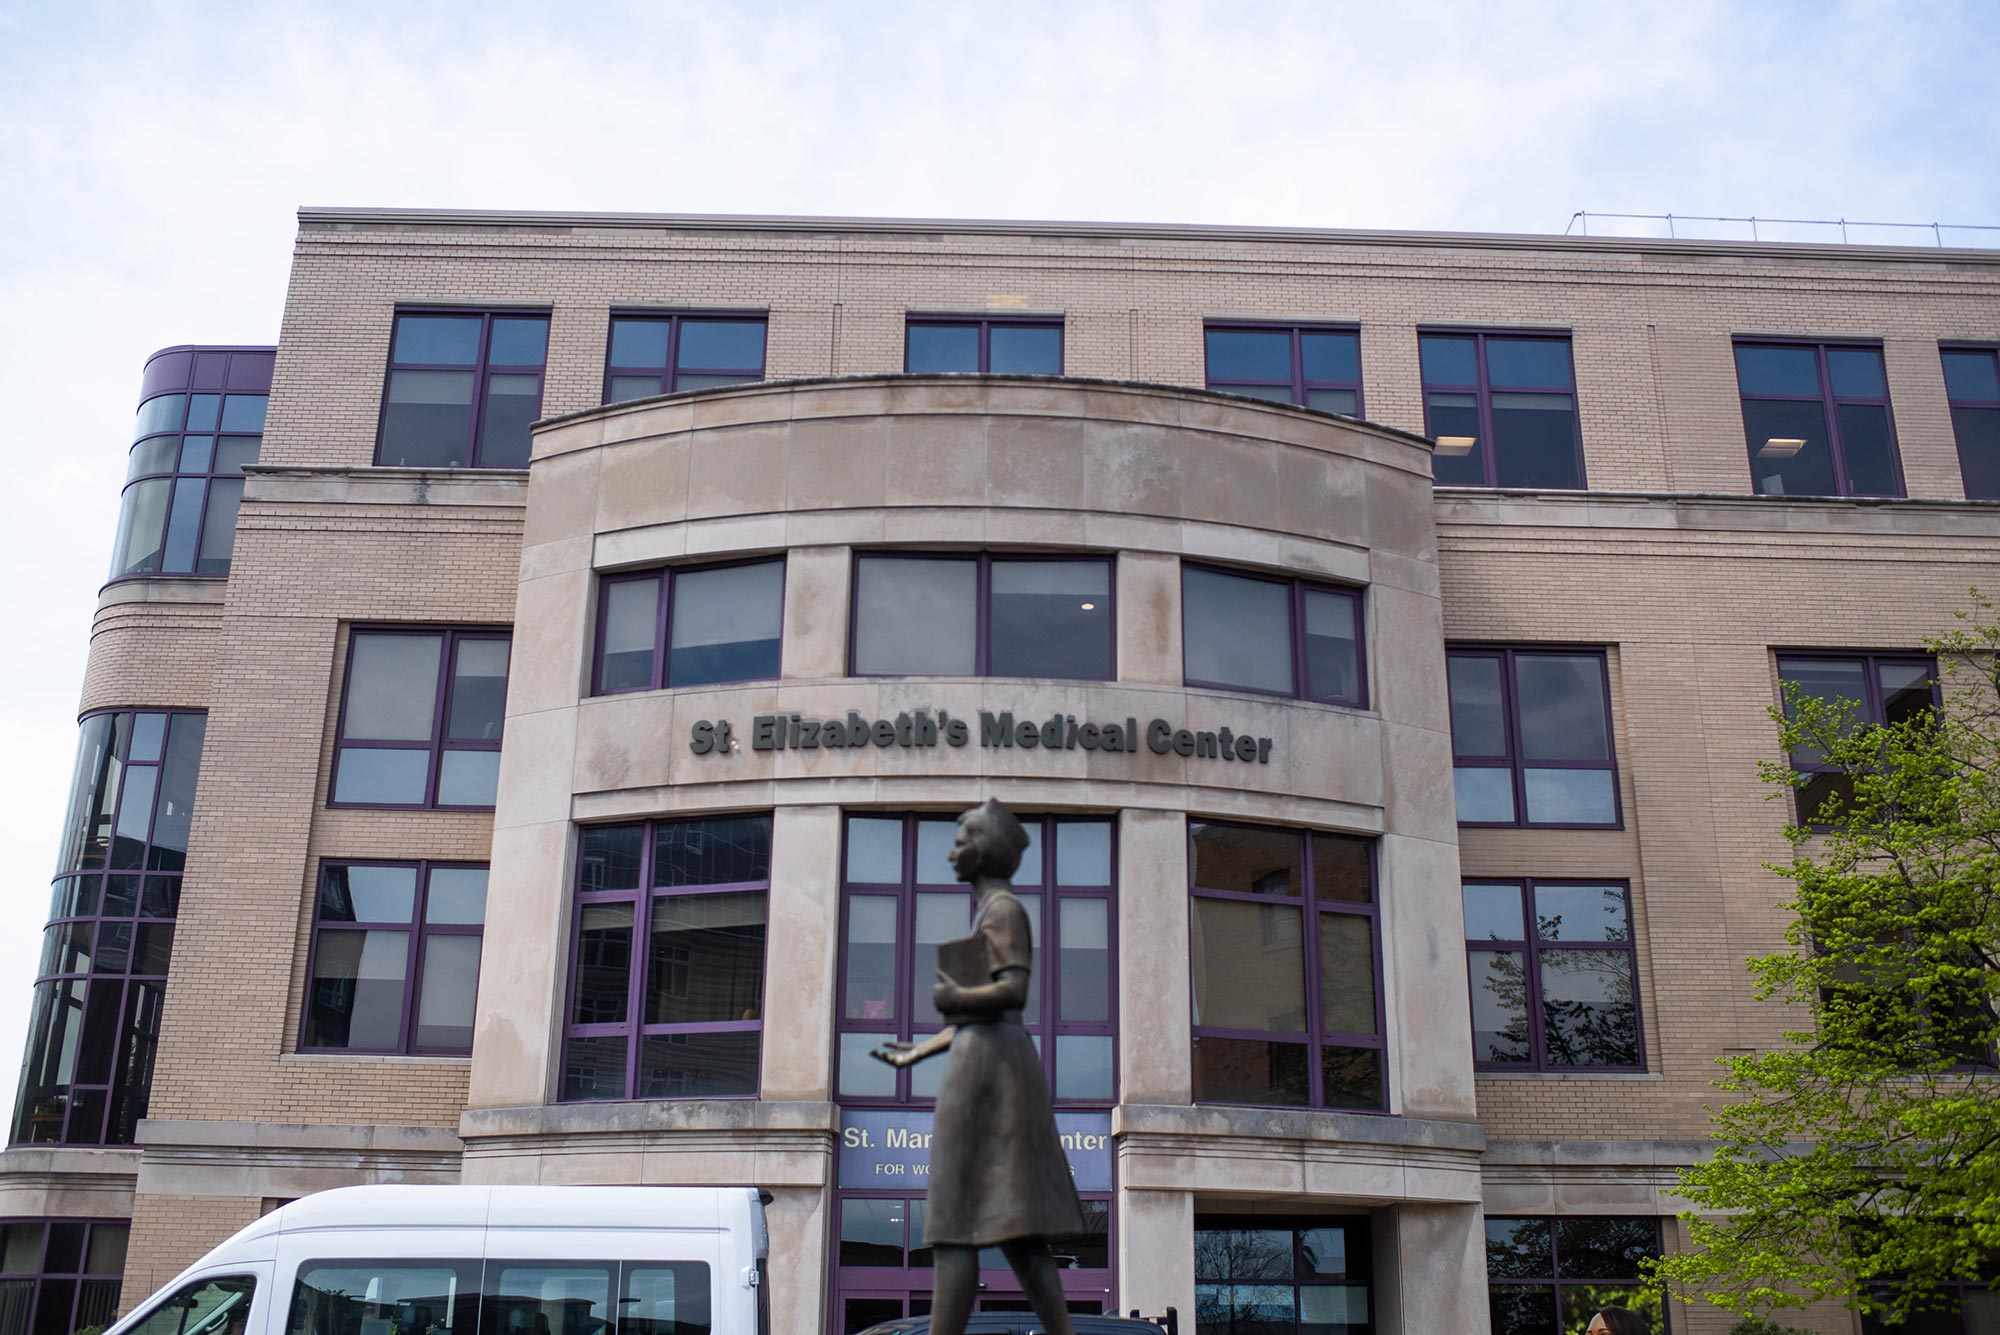 Image of entrance of St. Elizabeths Medical Center